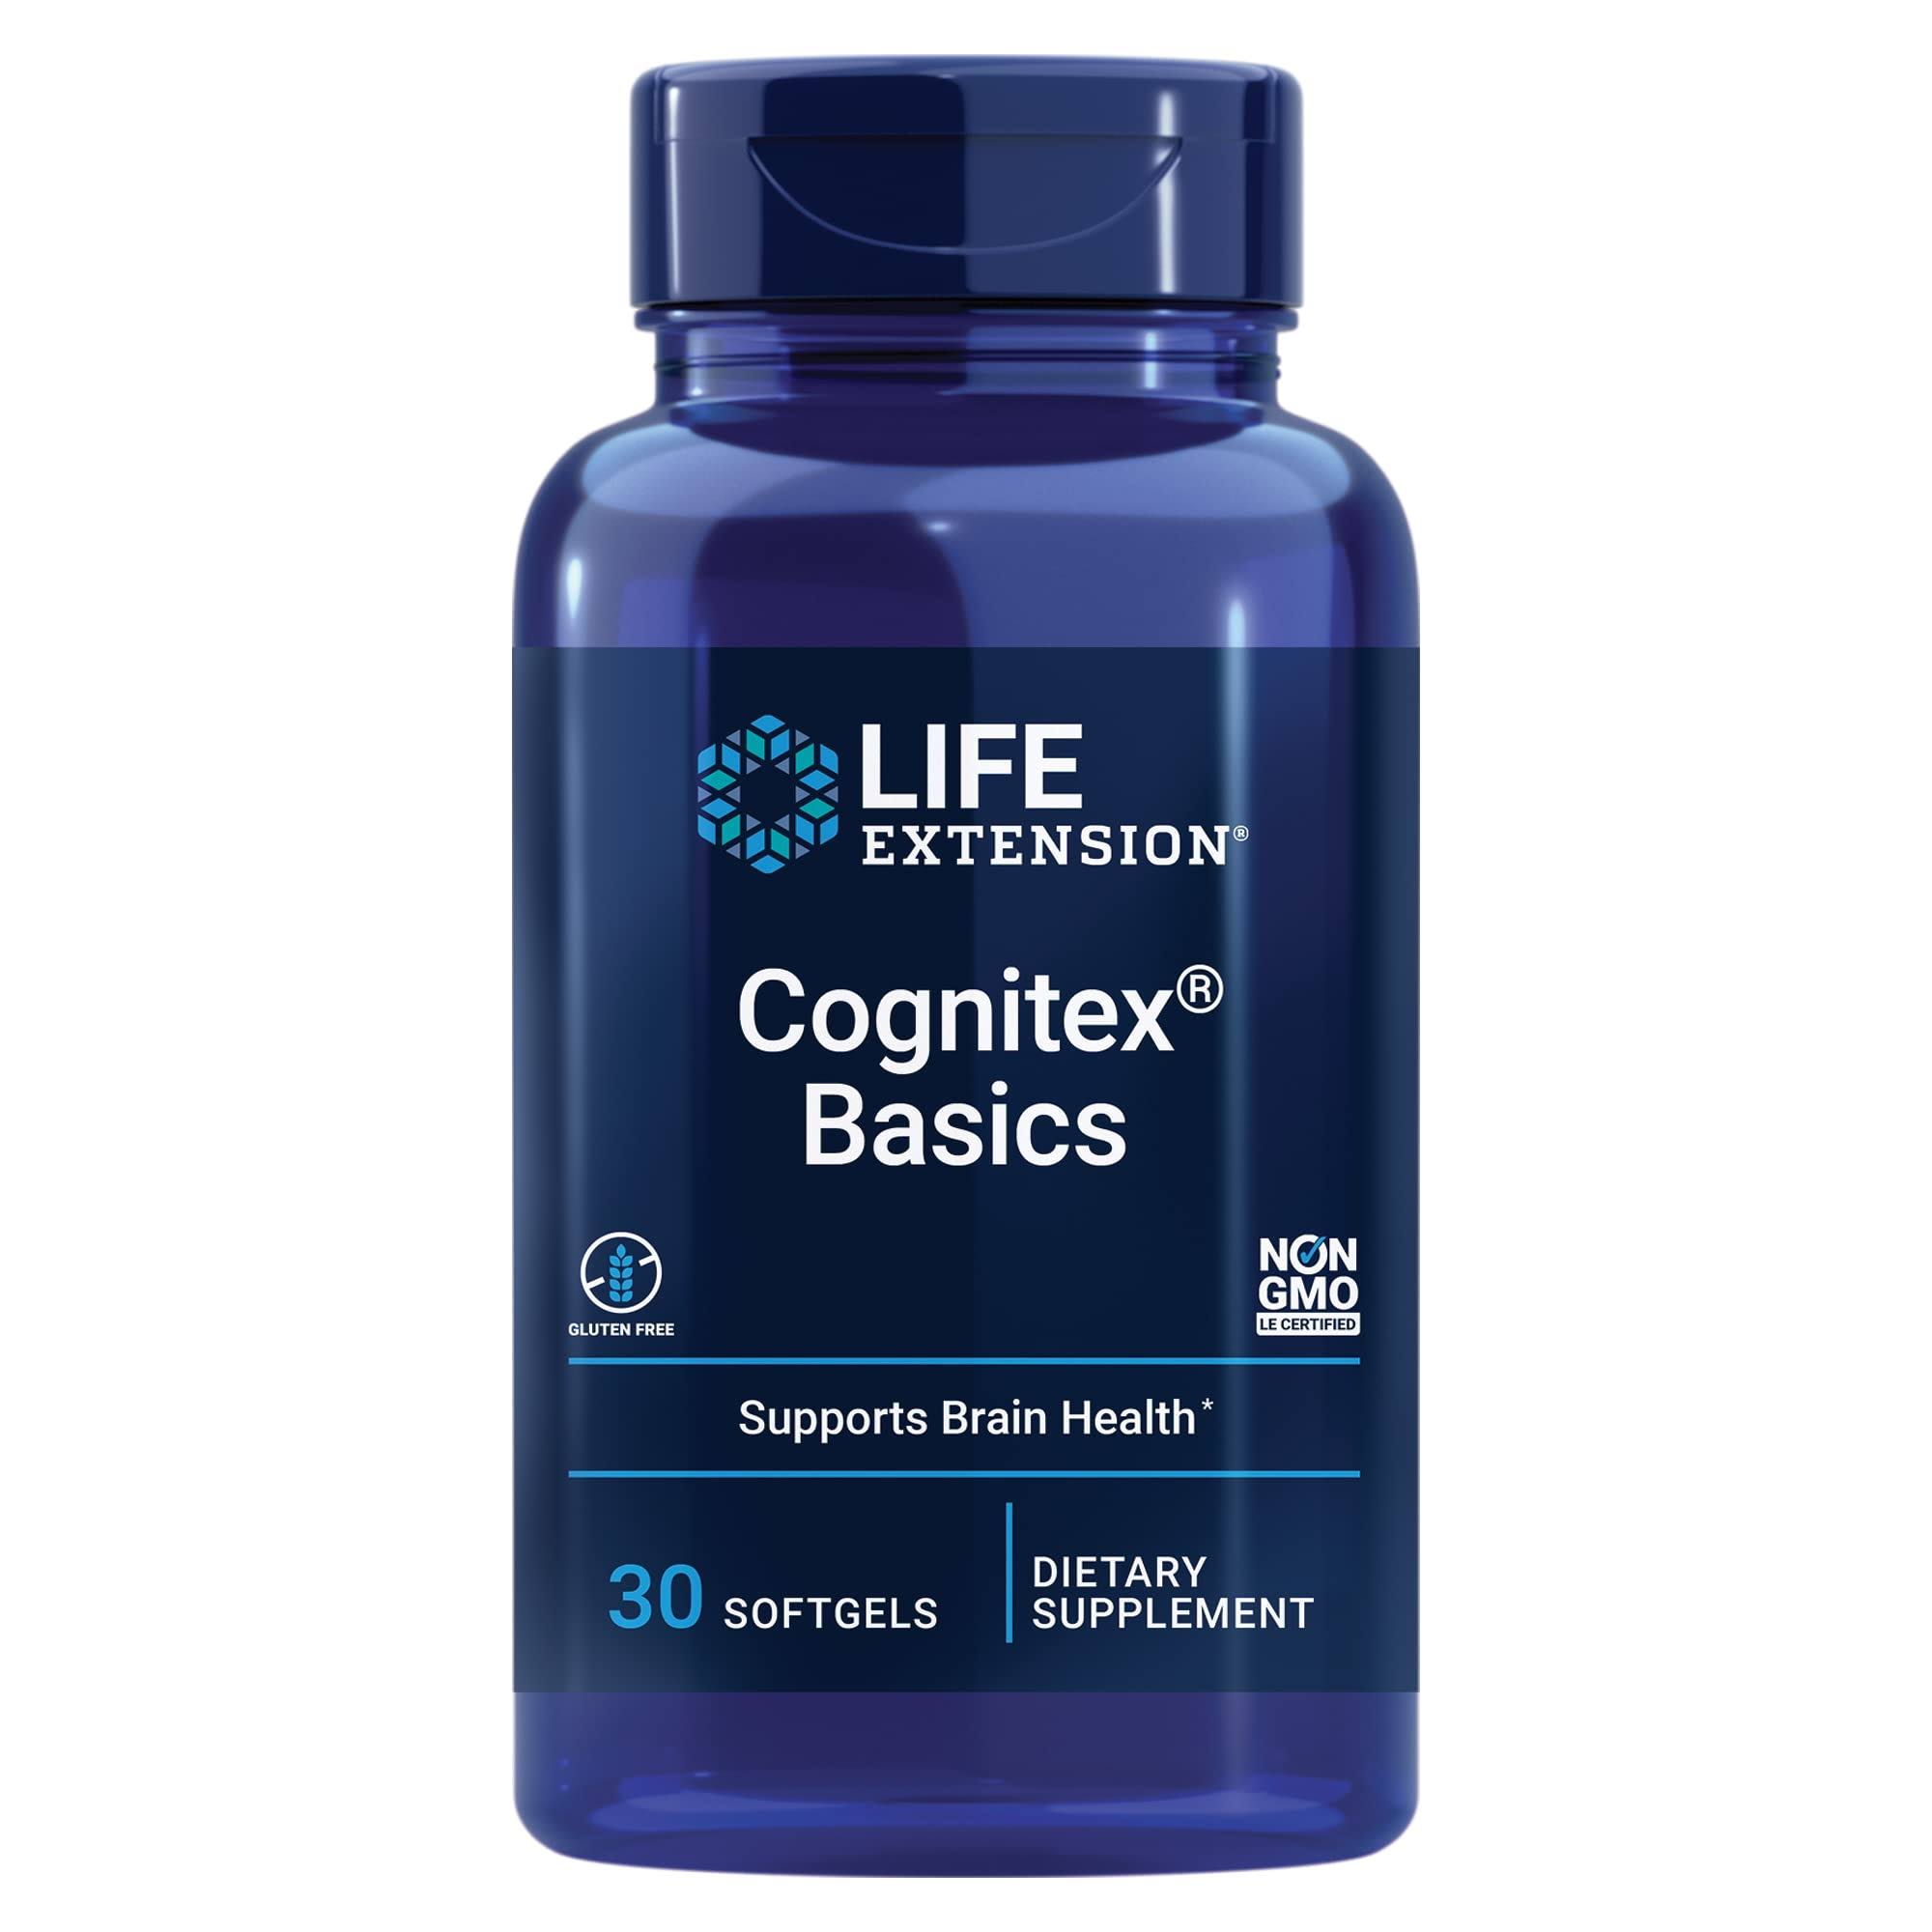 Life Extension Cognitex Basics - 30 Softgels